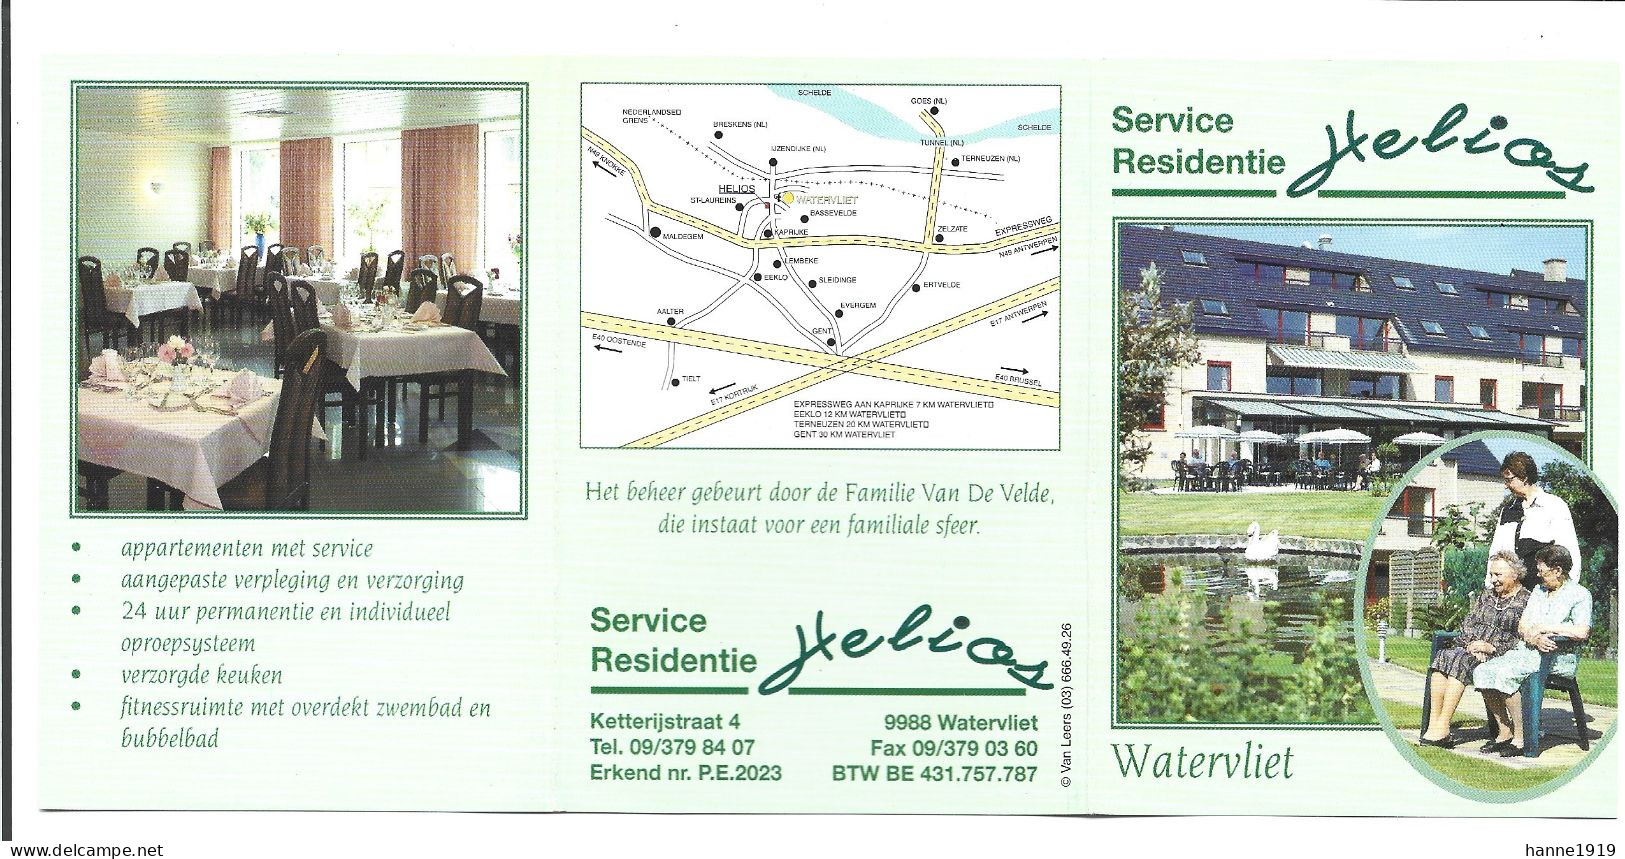 Watervliet Service Residentie Helios Ketterijstraat Visitekaartje Htje - Cartes De Visite